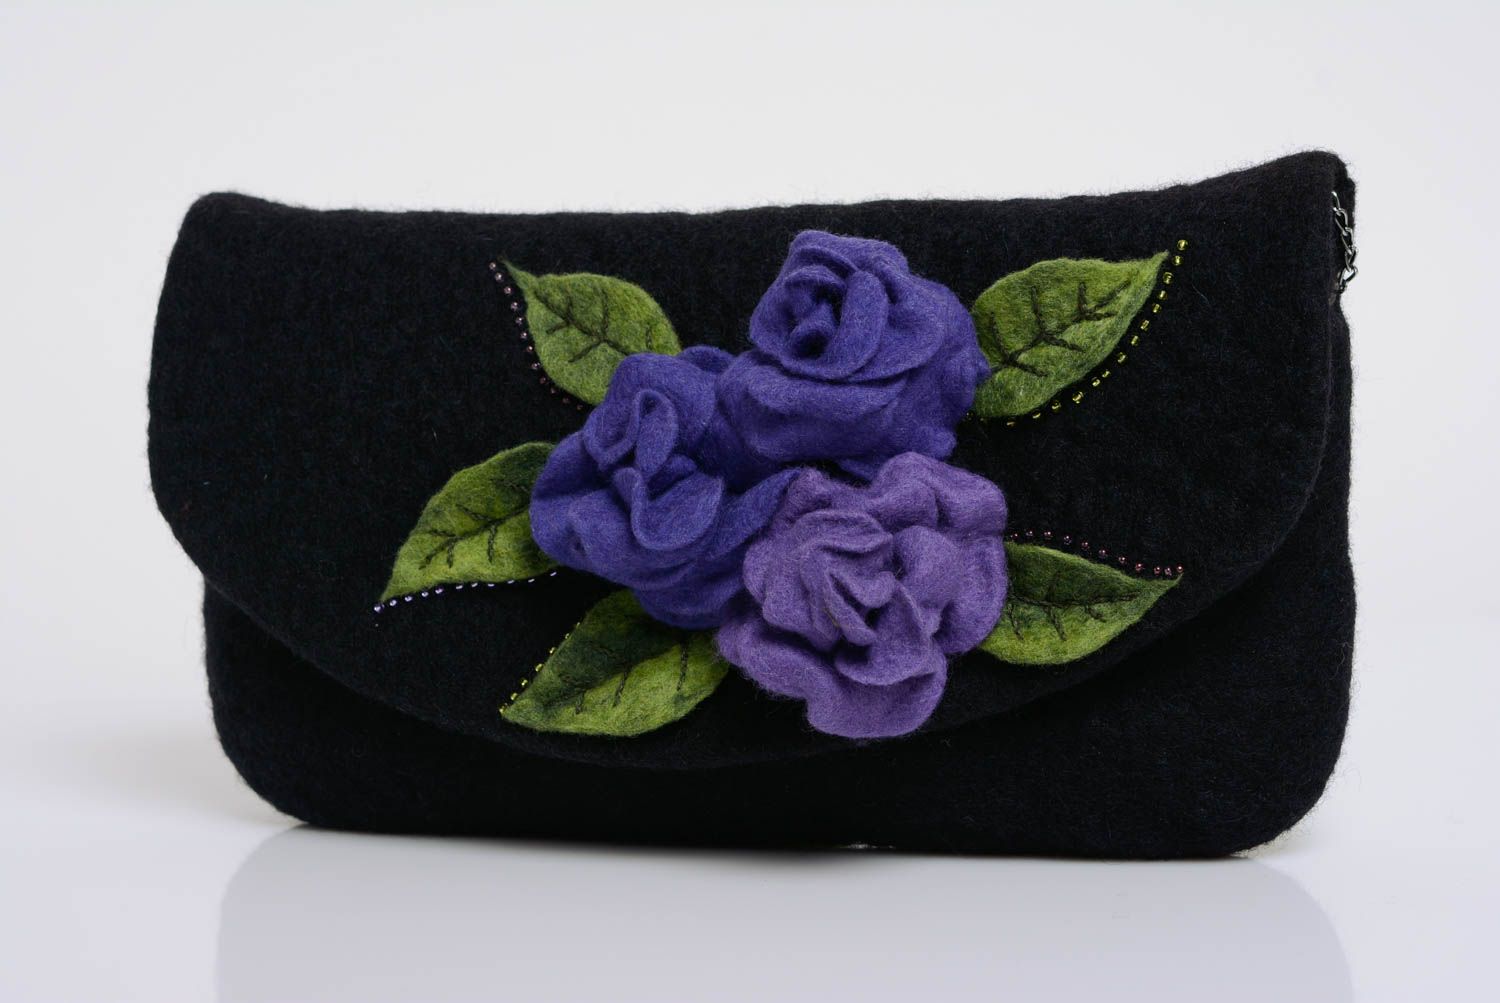 Sac pochette en laine feutrée noir avec fleurs fait main sur chaîne métallique photo 1